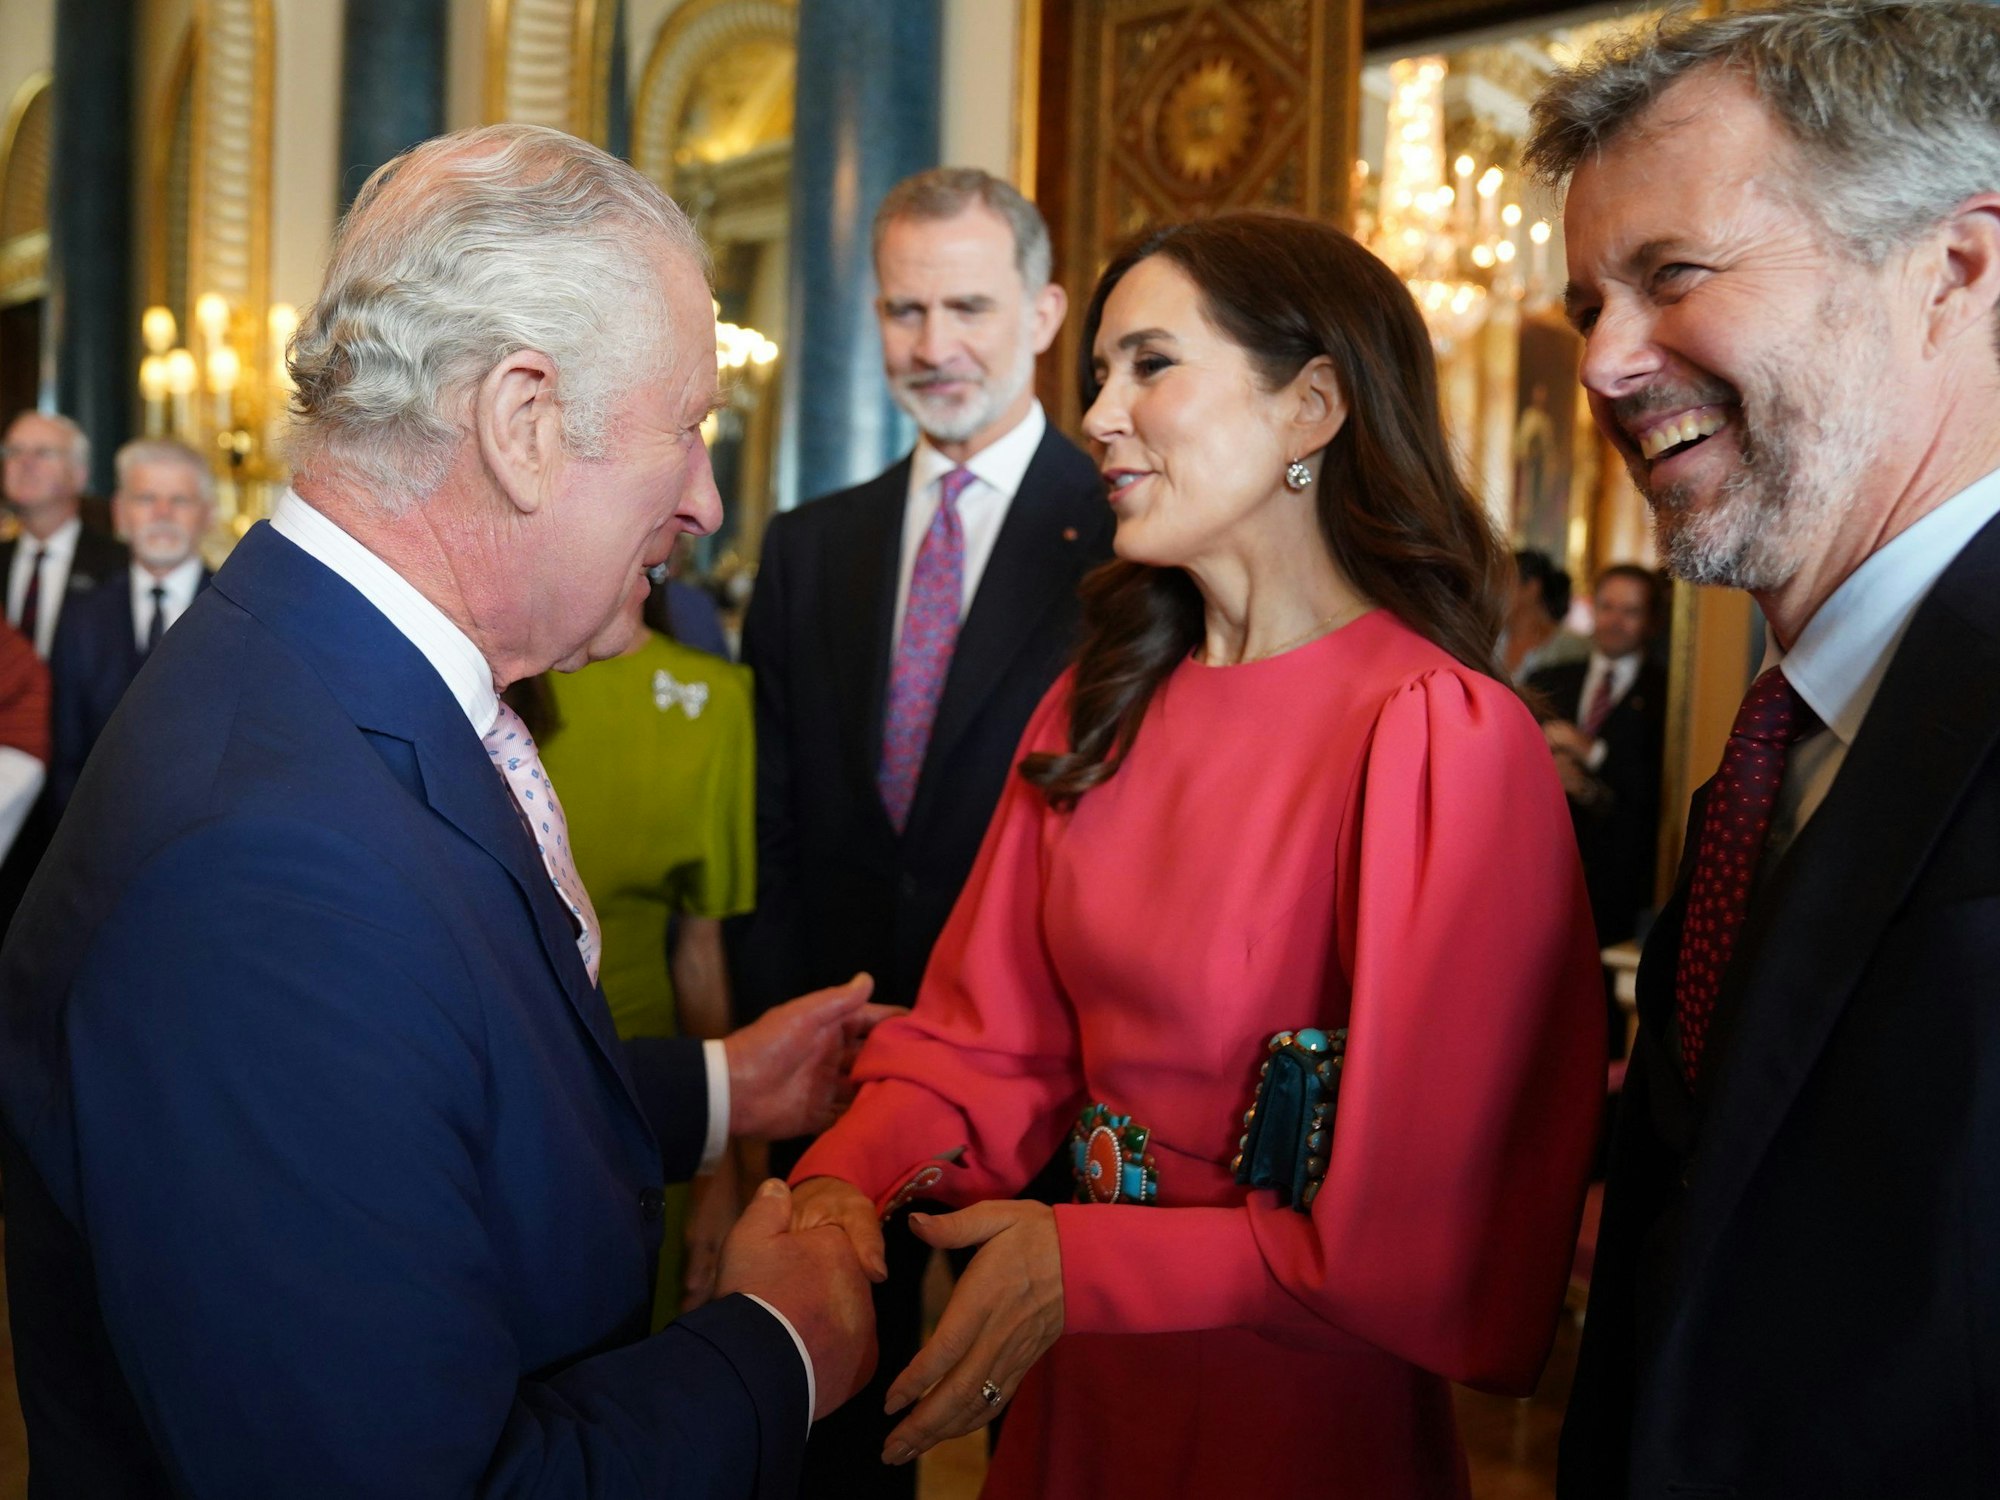 König Charles III. (l) von Großbritannien begrüßt Mary (M), Kronprinzessin von Dänemark, und Frederik, Kronprinz von Dänemark, während eines Empfangs im Buckingham Palace für ausländische Gäste, die an seiner Krönung teilnehmen.